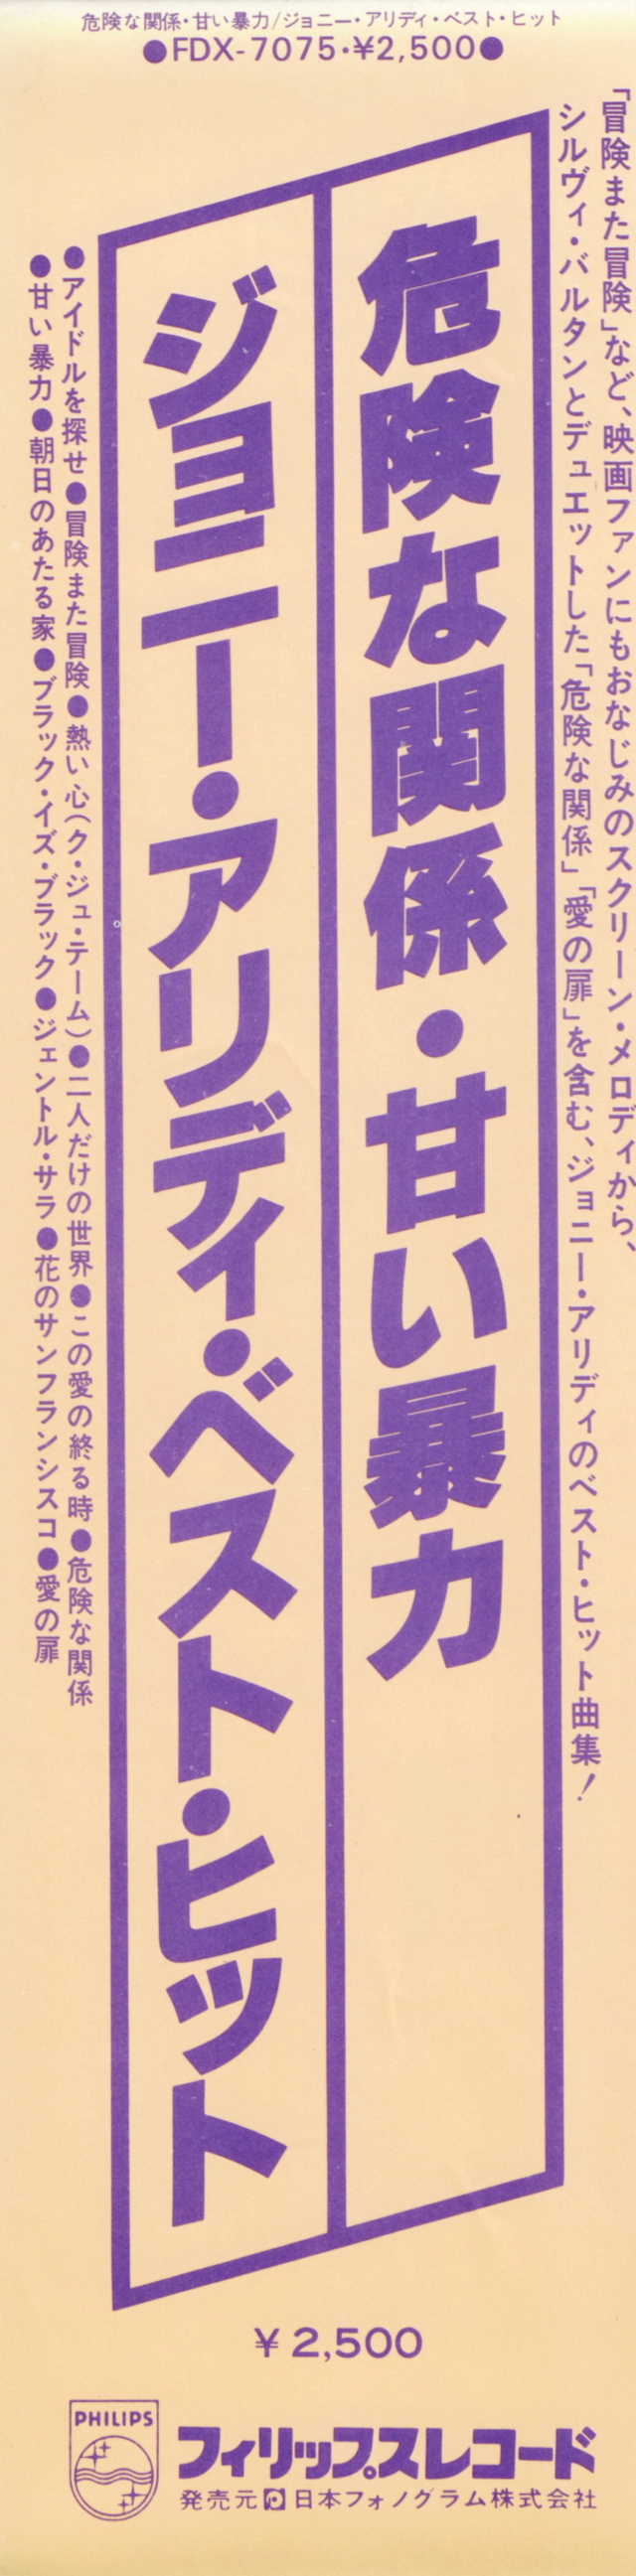 Discographie Japonaise - 4ème partie (33 T COMPILATION) - Page 17 Jpn_fd31